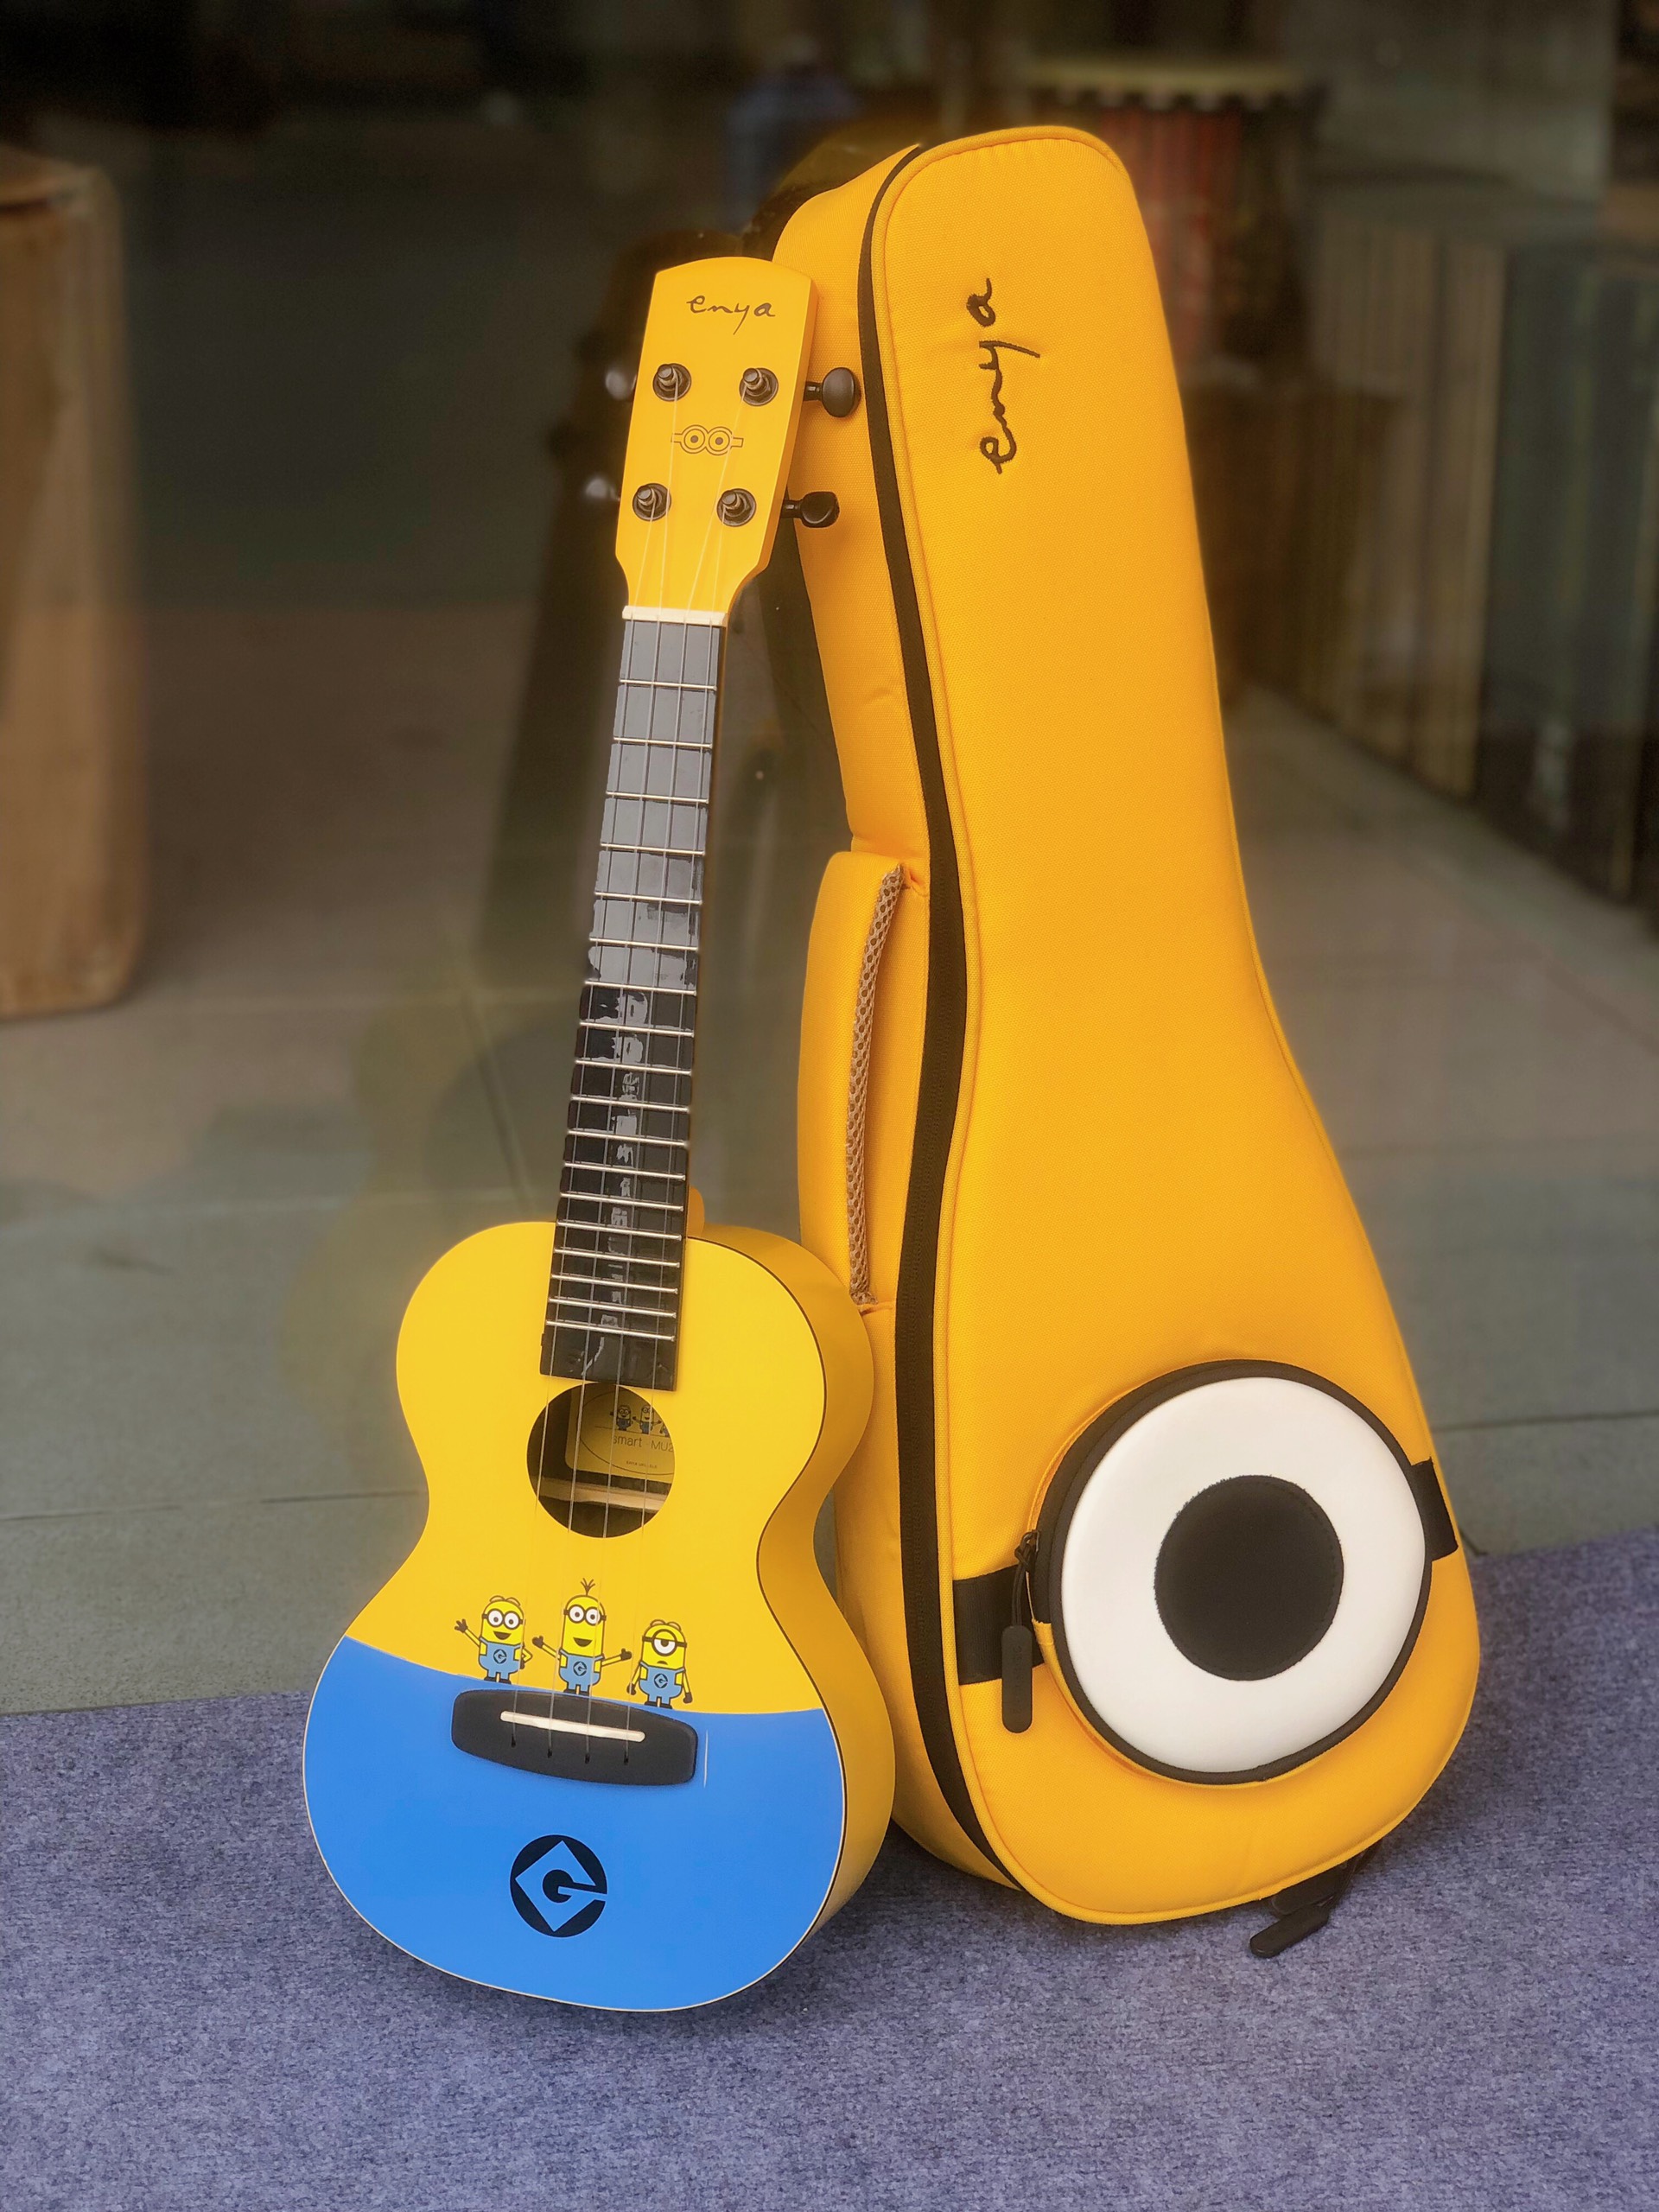 Đàn ukulele Enya Minion Limited chính hãng